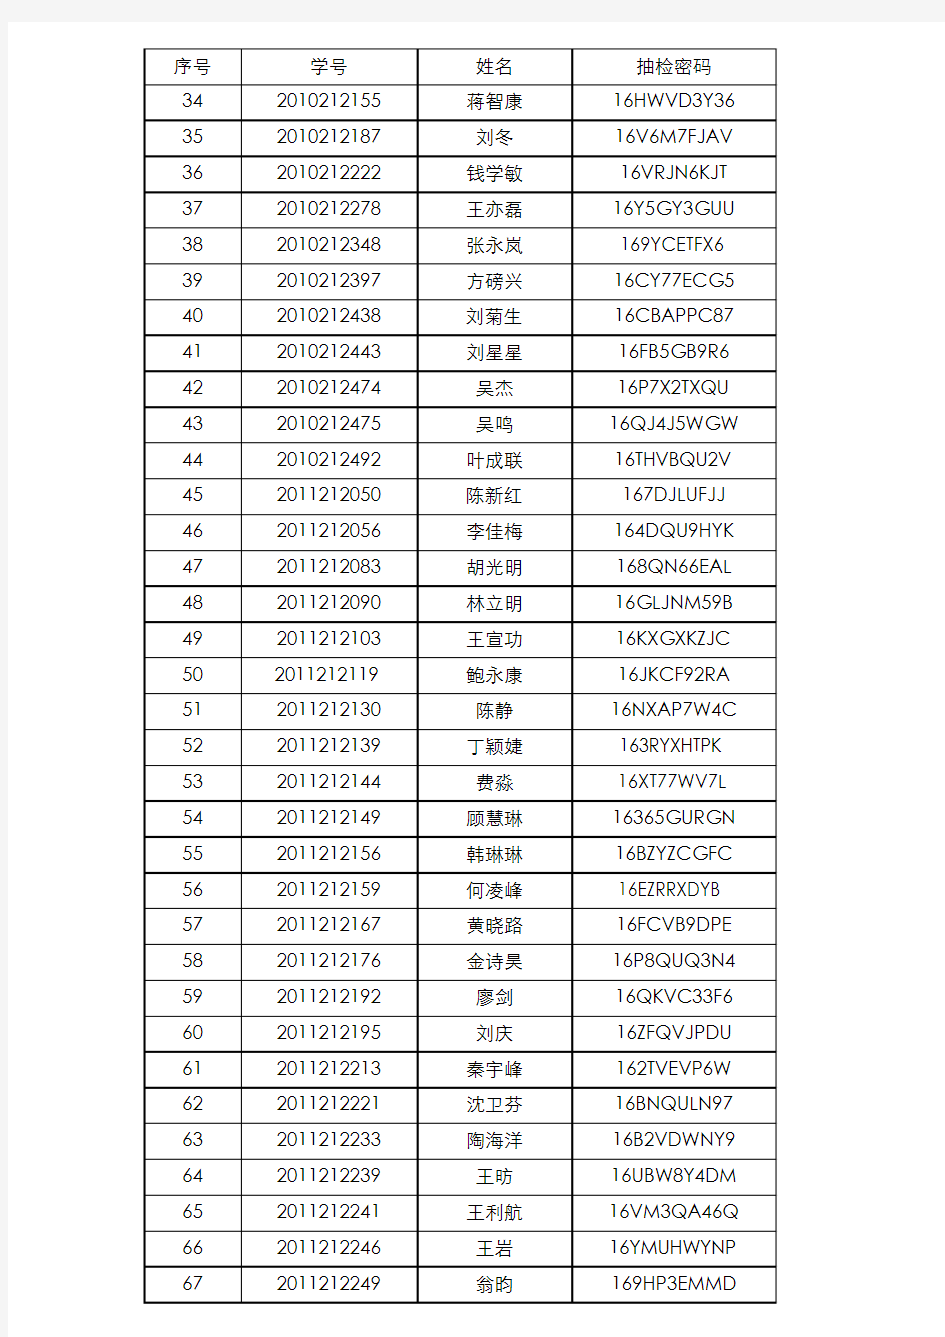 序号 学号 姓名 抽检密码 - 上海财经大学商学院 - 首页